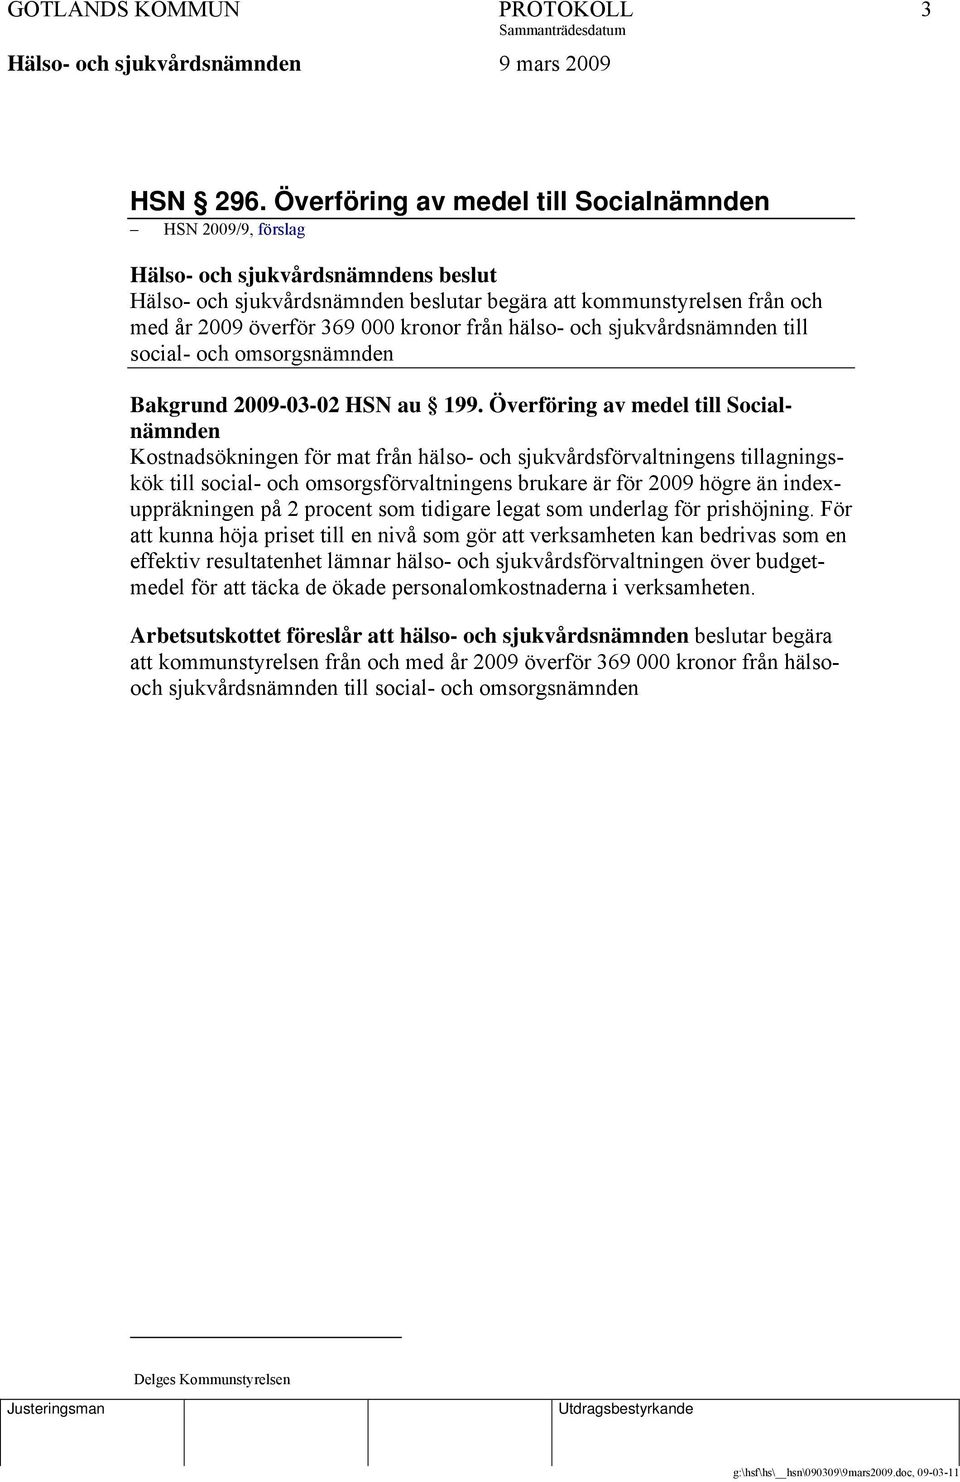 kronor från hälso- och sjukvårdsnämnden till social- och omsorgsnämnden Bakgrund 2009-03-02 HSN au 199.